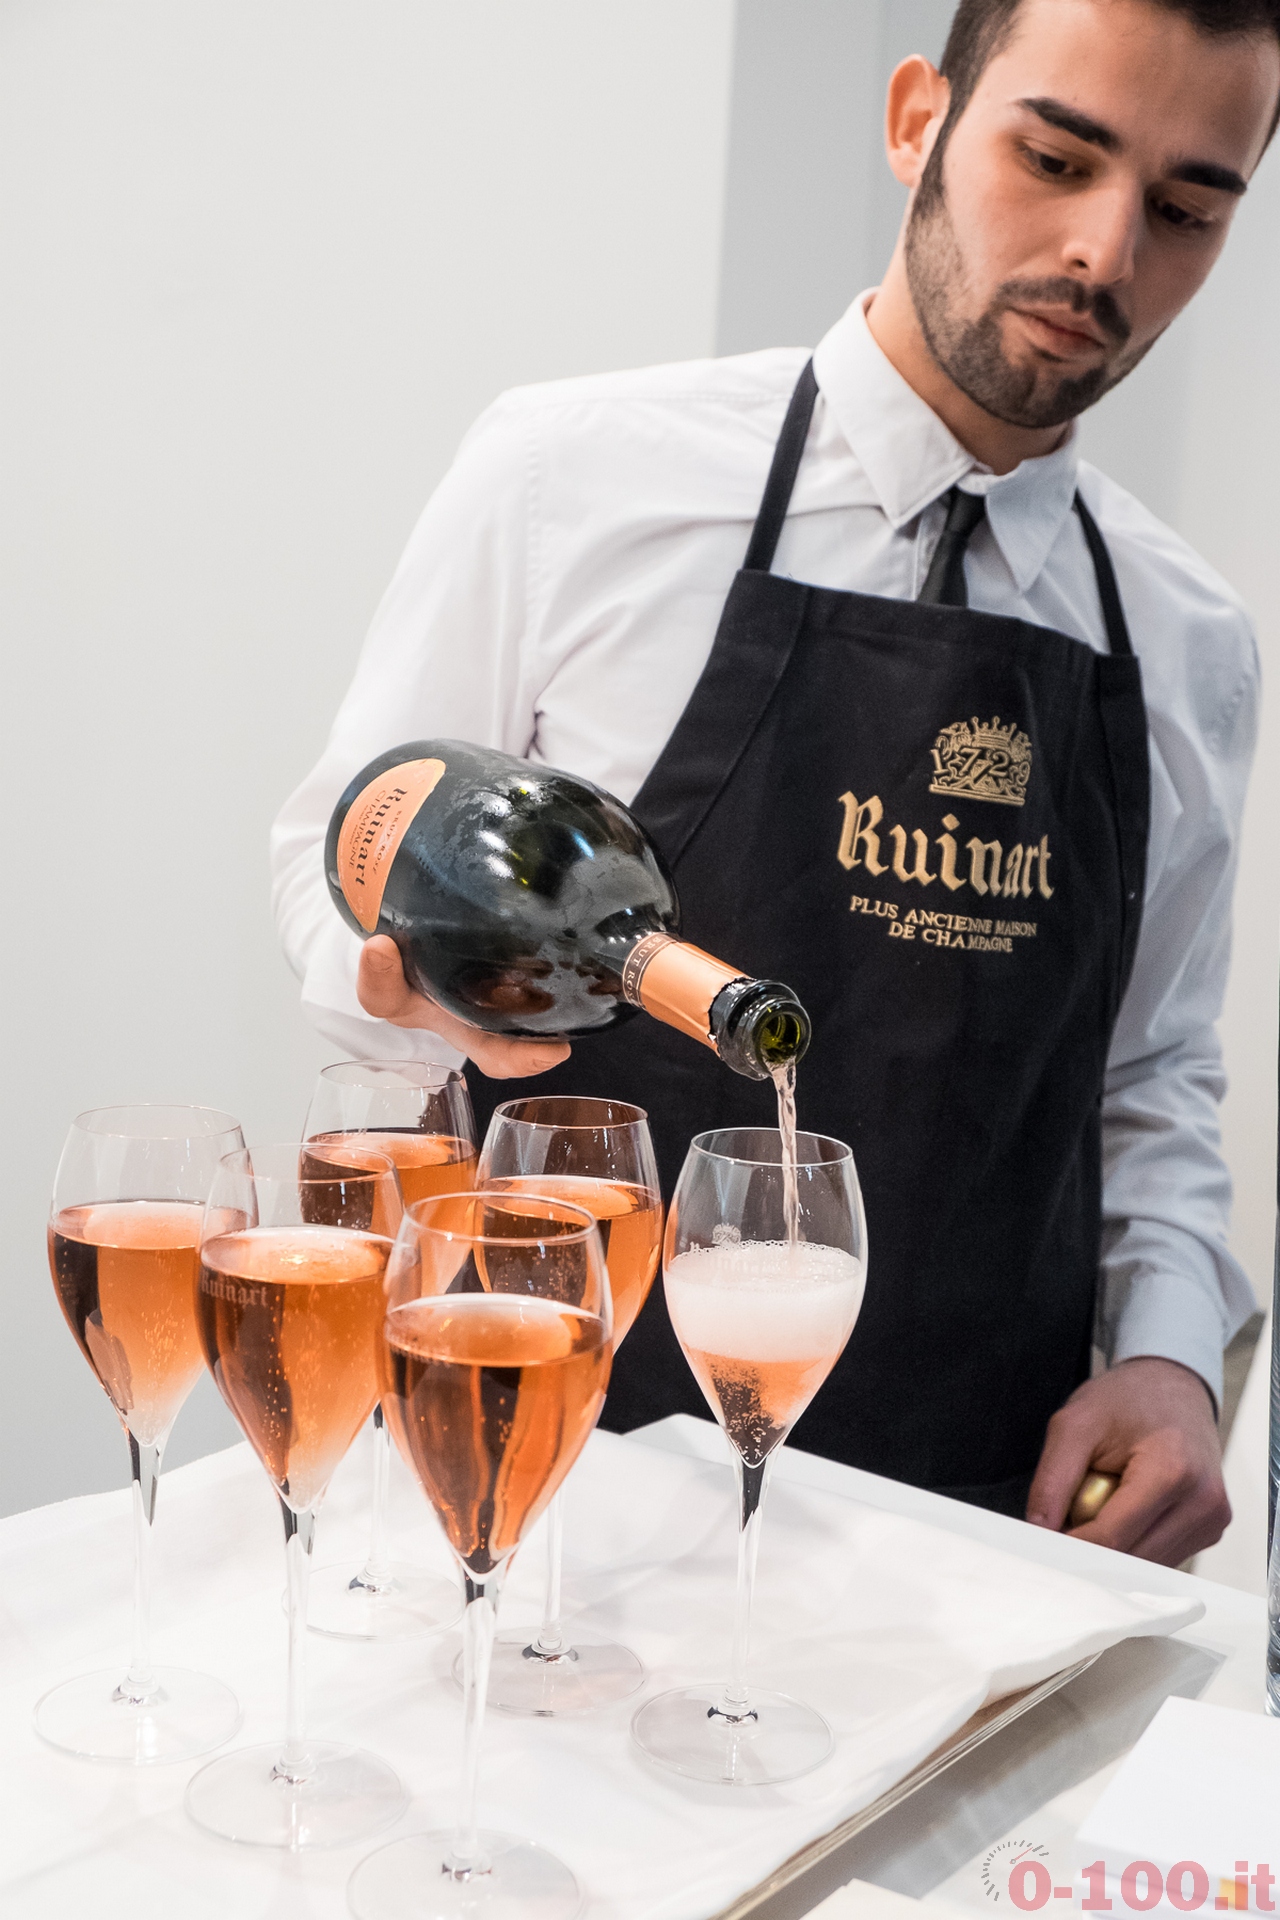 champagne-ruinart-questanno-il-250-anniversario-della-prima-spedizione-di-champagne-ruinart-italia-miart-2014_0-1008